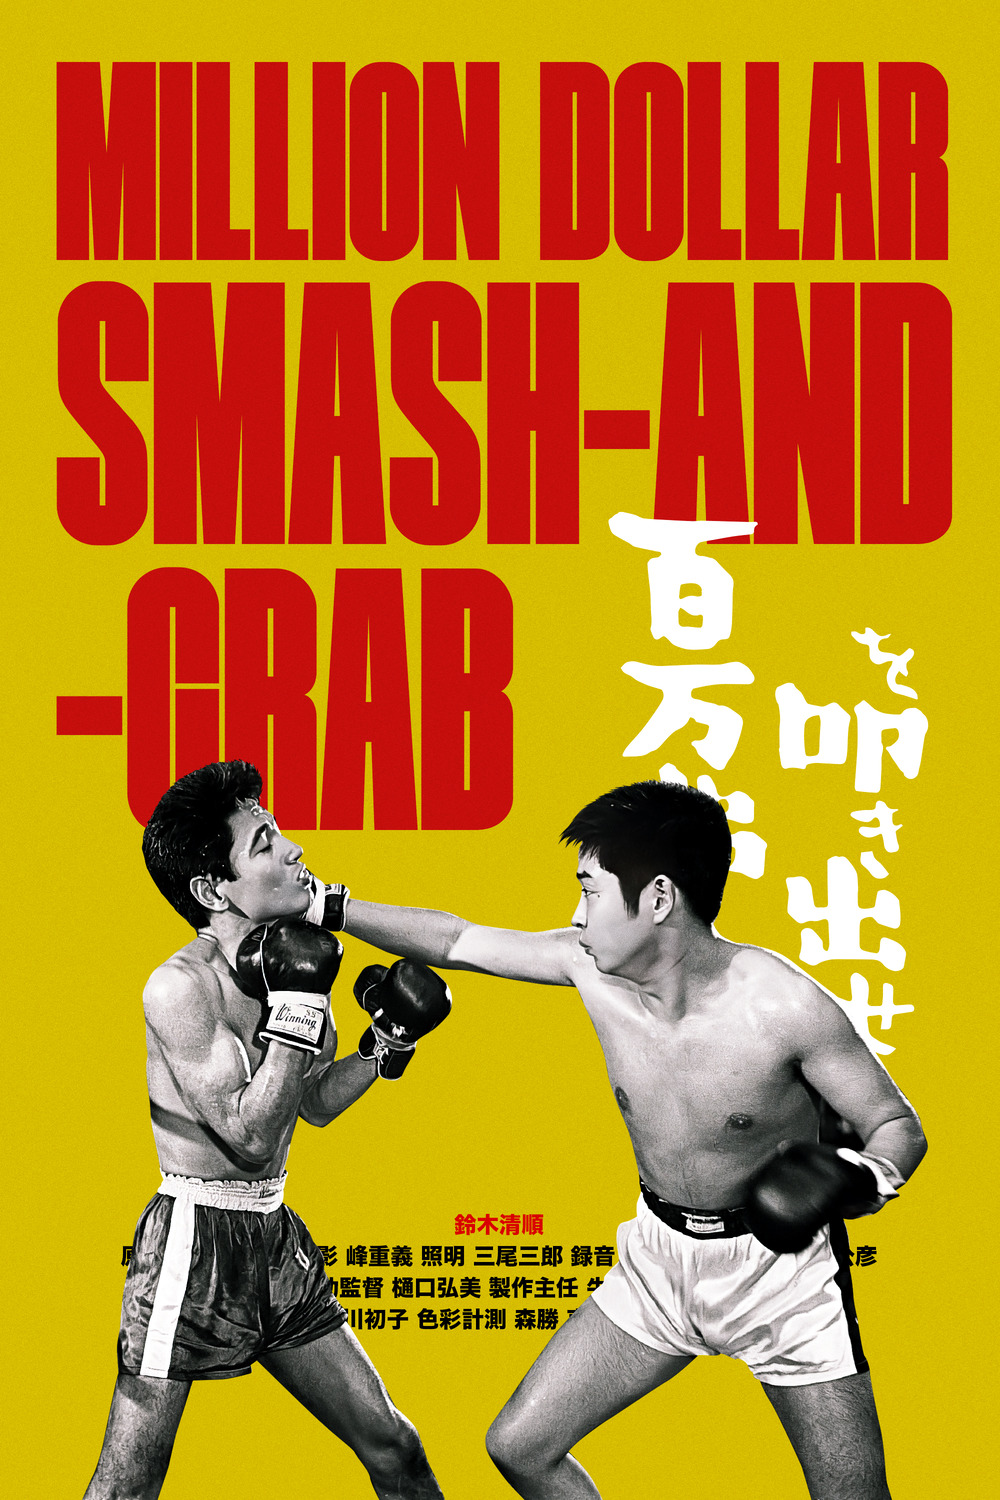 Extra Large Movie Poster Image for Hyakuman-doru o tatakidase (#2 of 2)